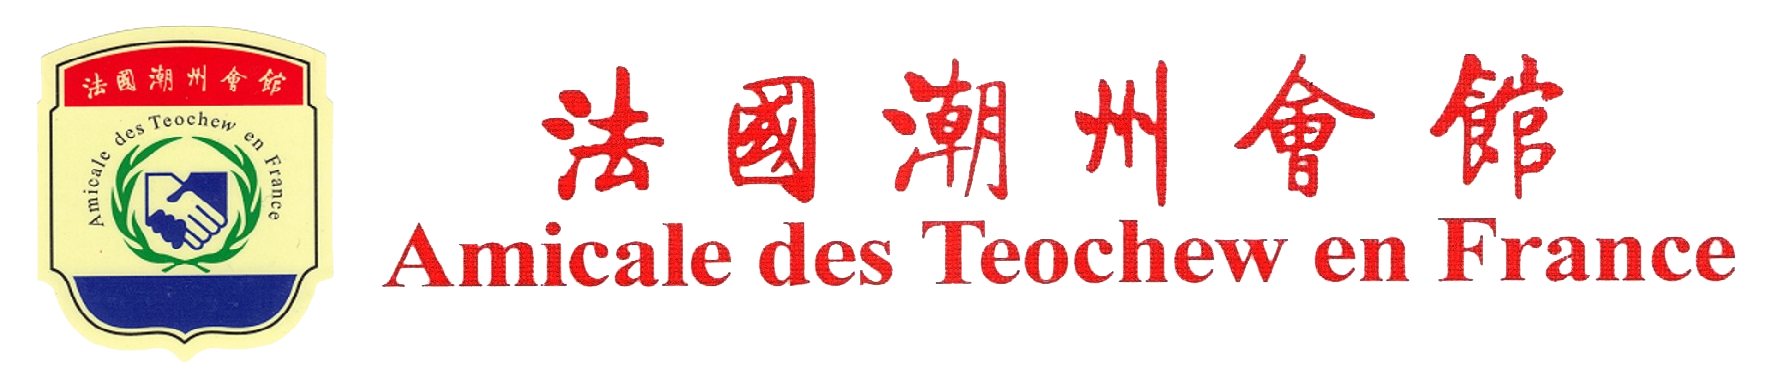 Amicale des Teochew en France